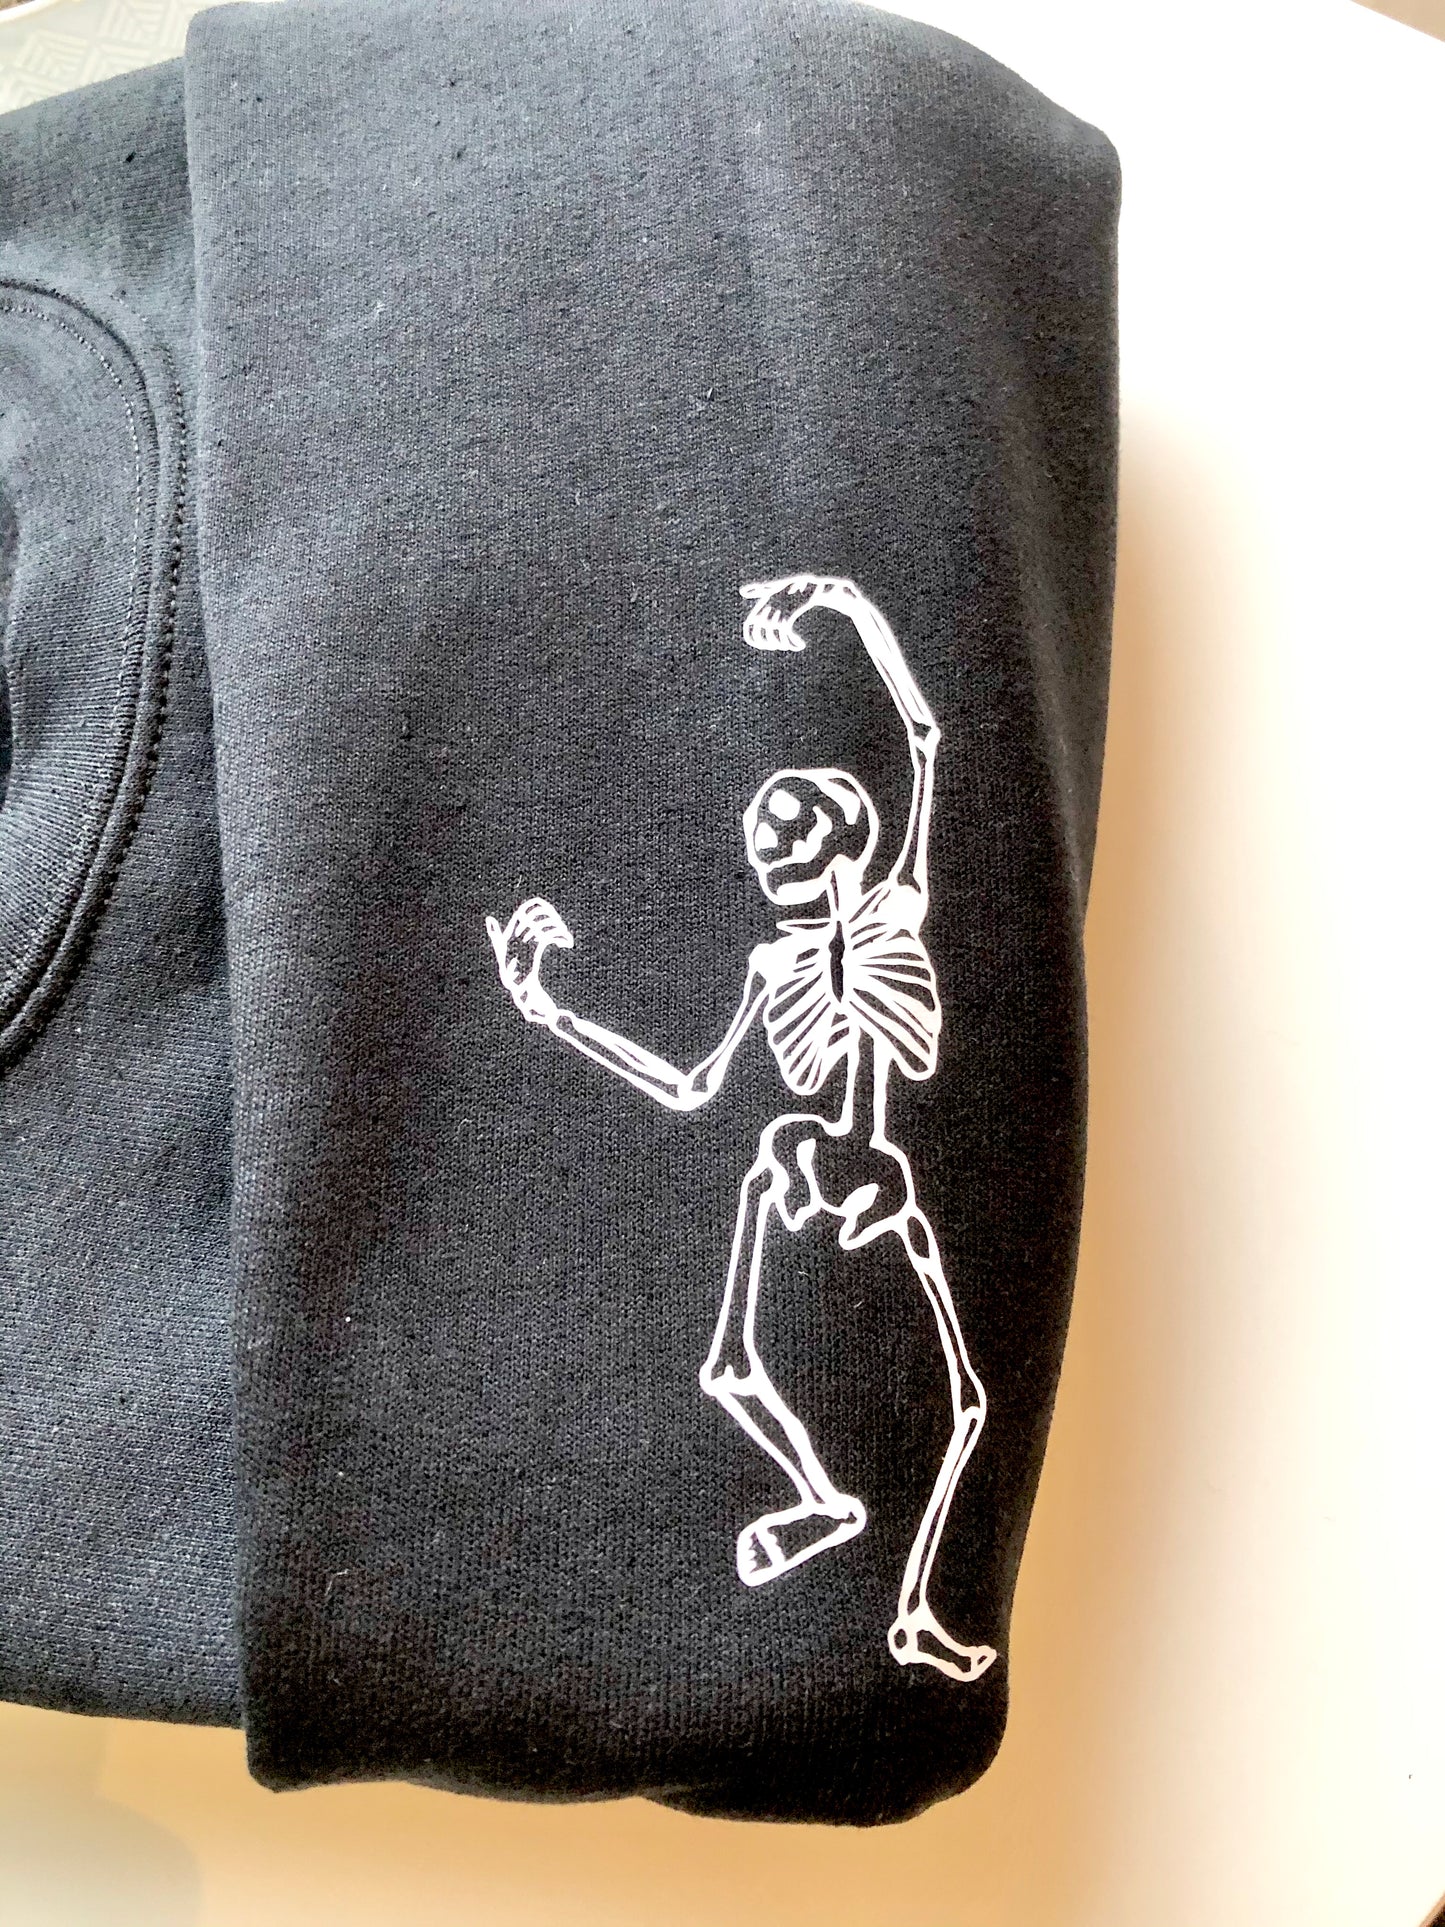 Dancing skeleton sleeved sweatshirt